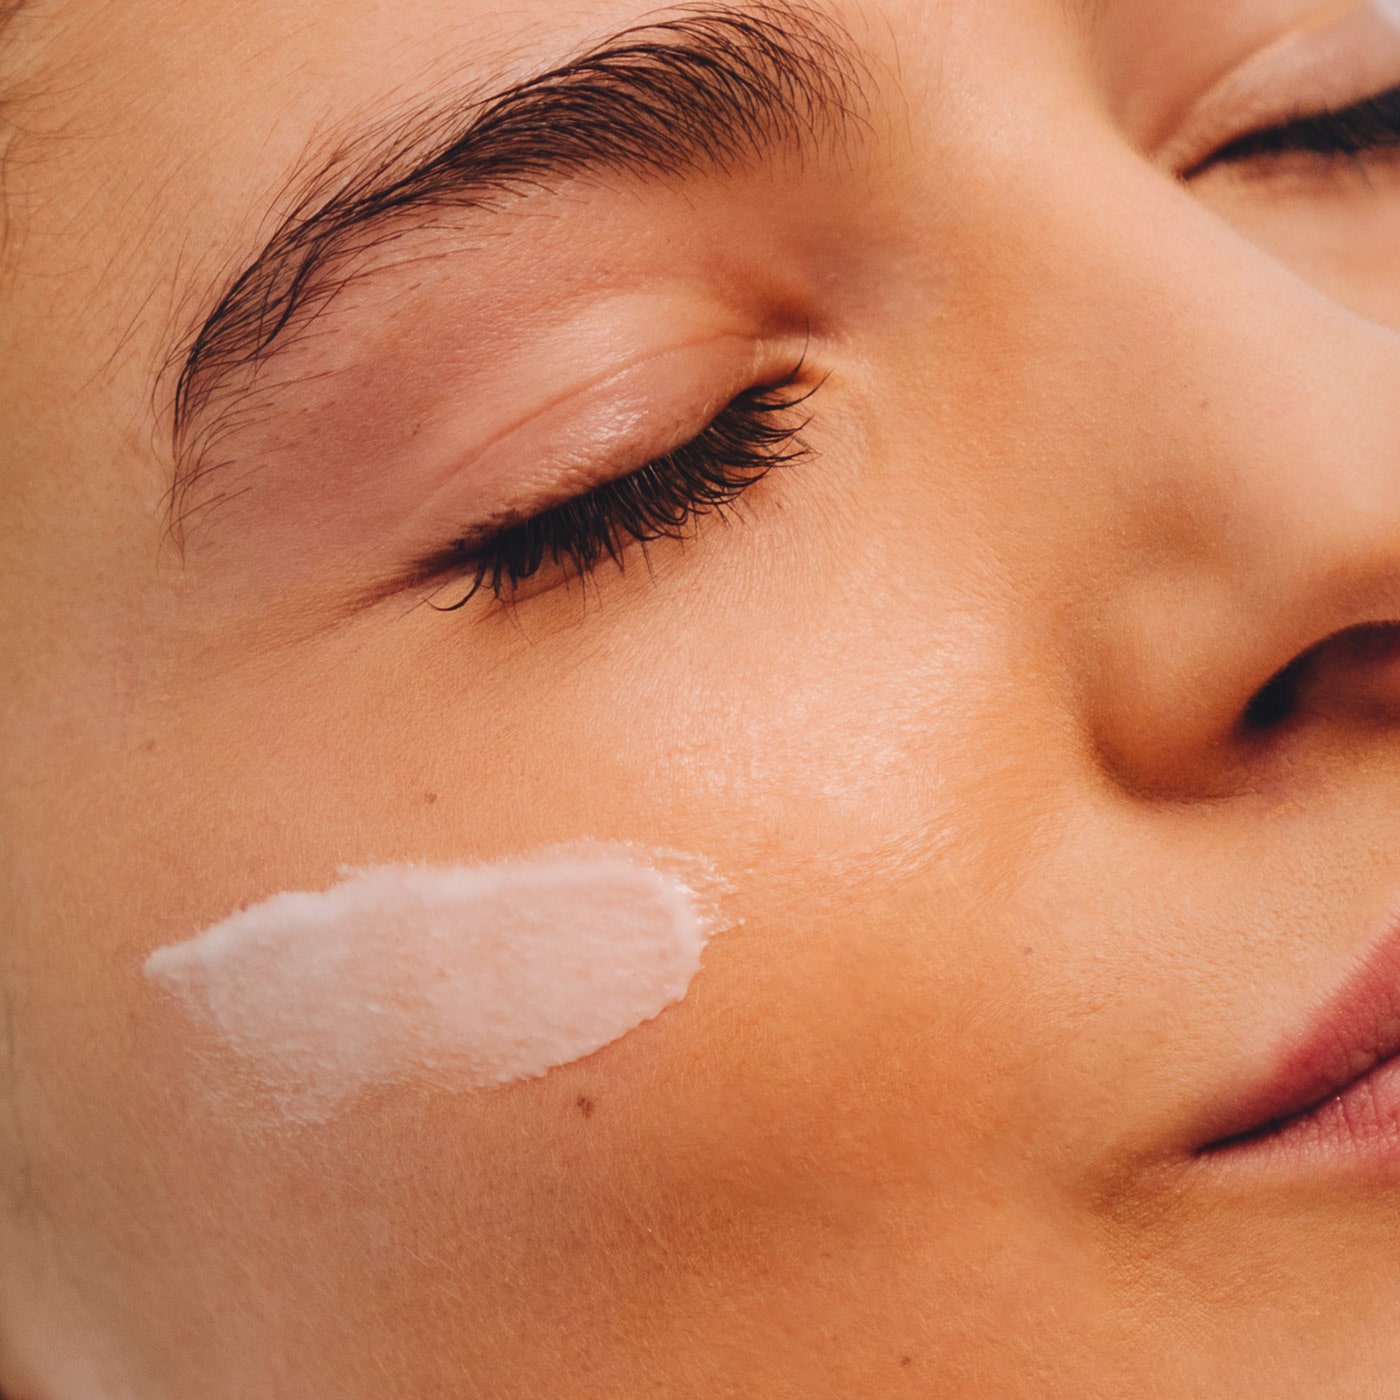 Anwendung micaraa Gesichtsserum mit Probiotika hilft bei sensibler Haut